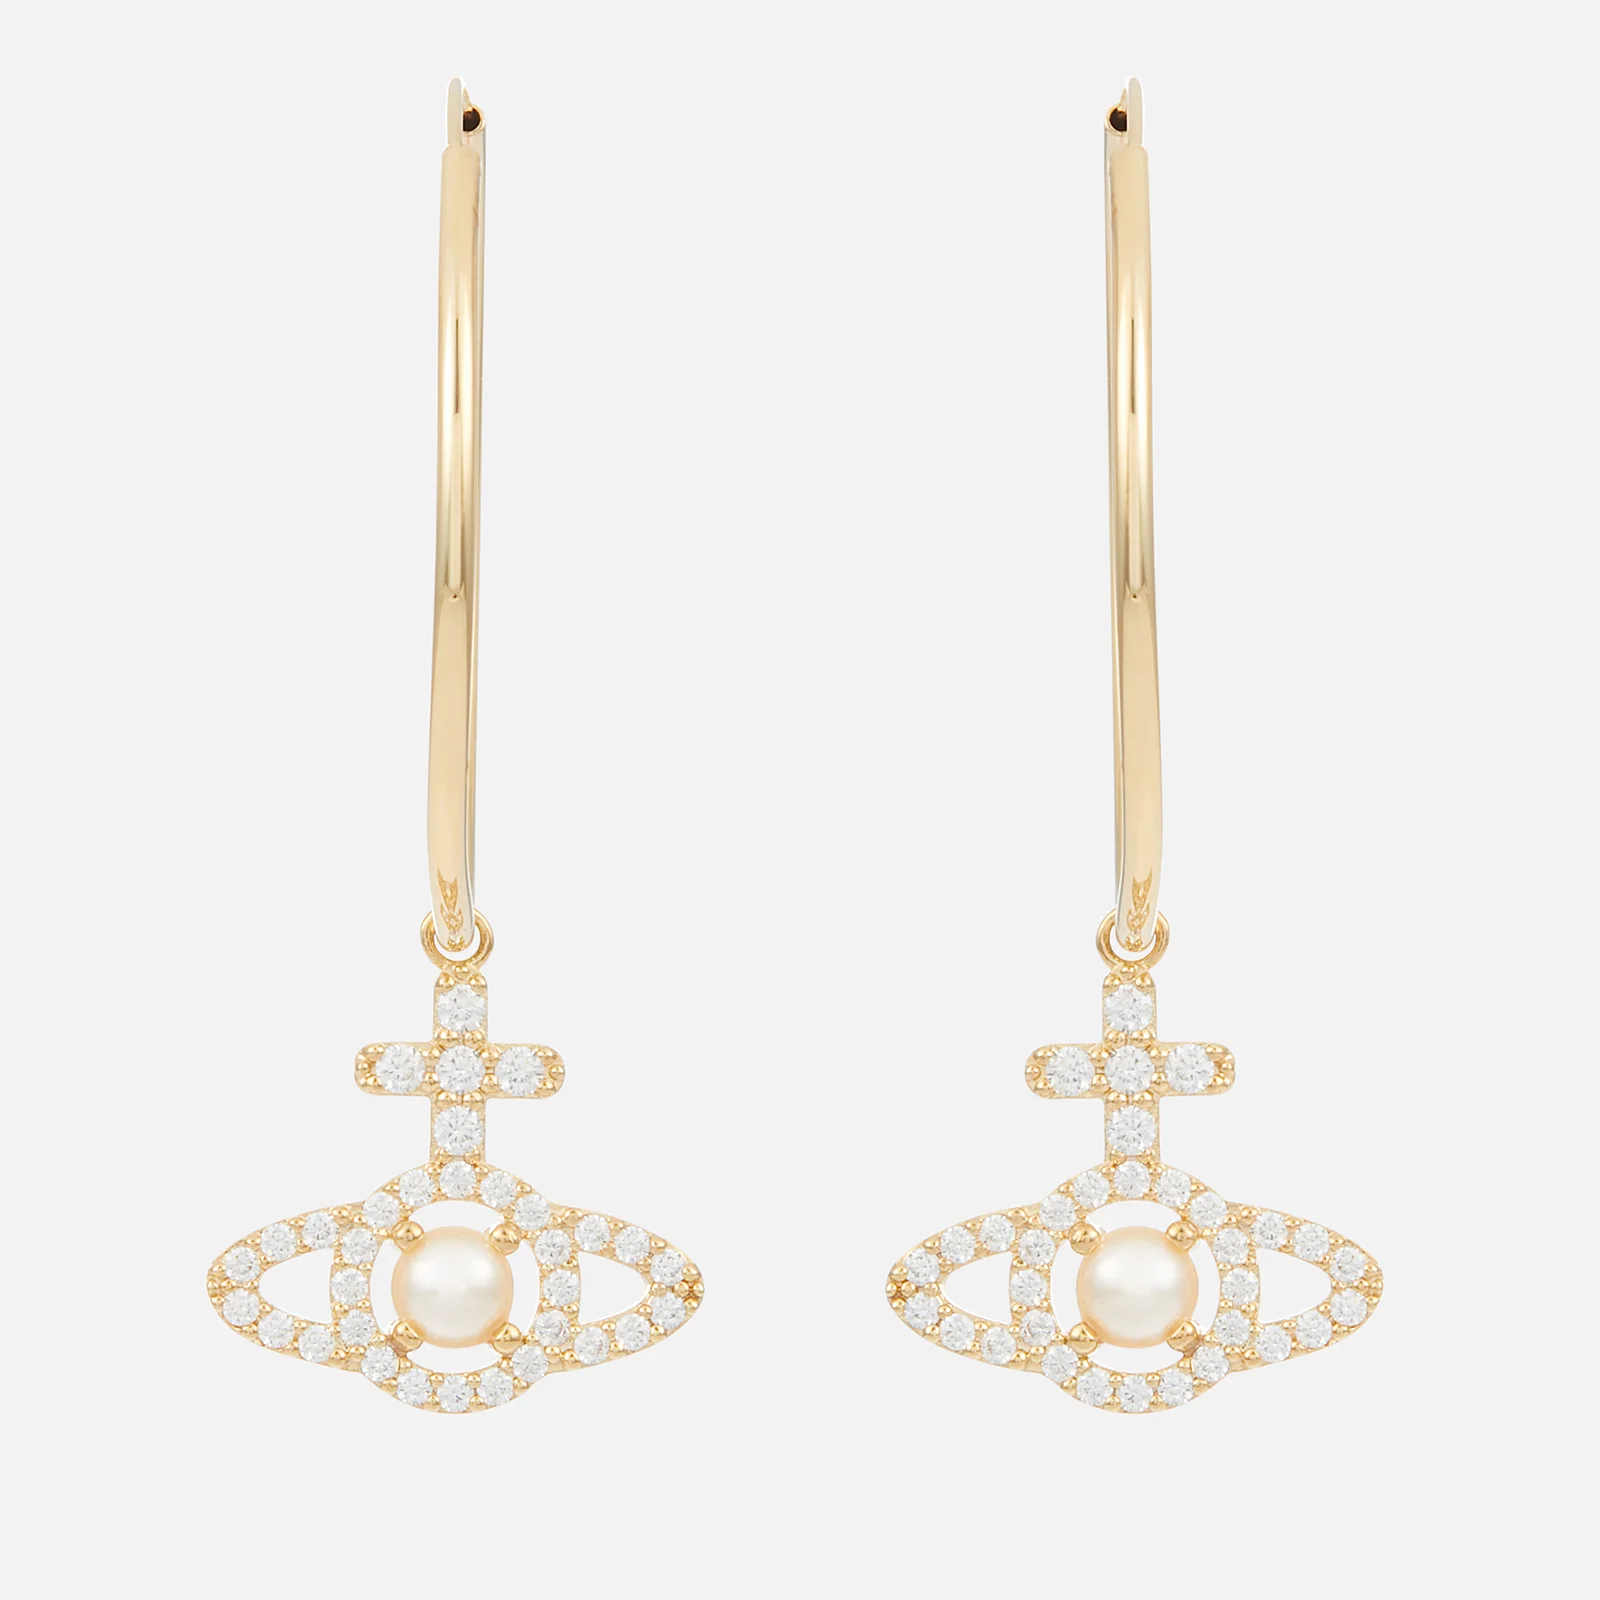 Vivienne Westwood Olympia Gold-Tone Hoop Earrings Image 1